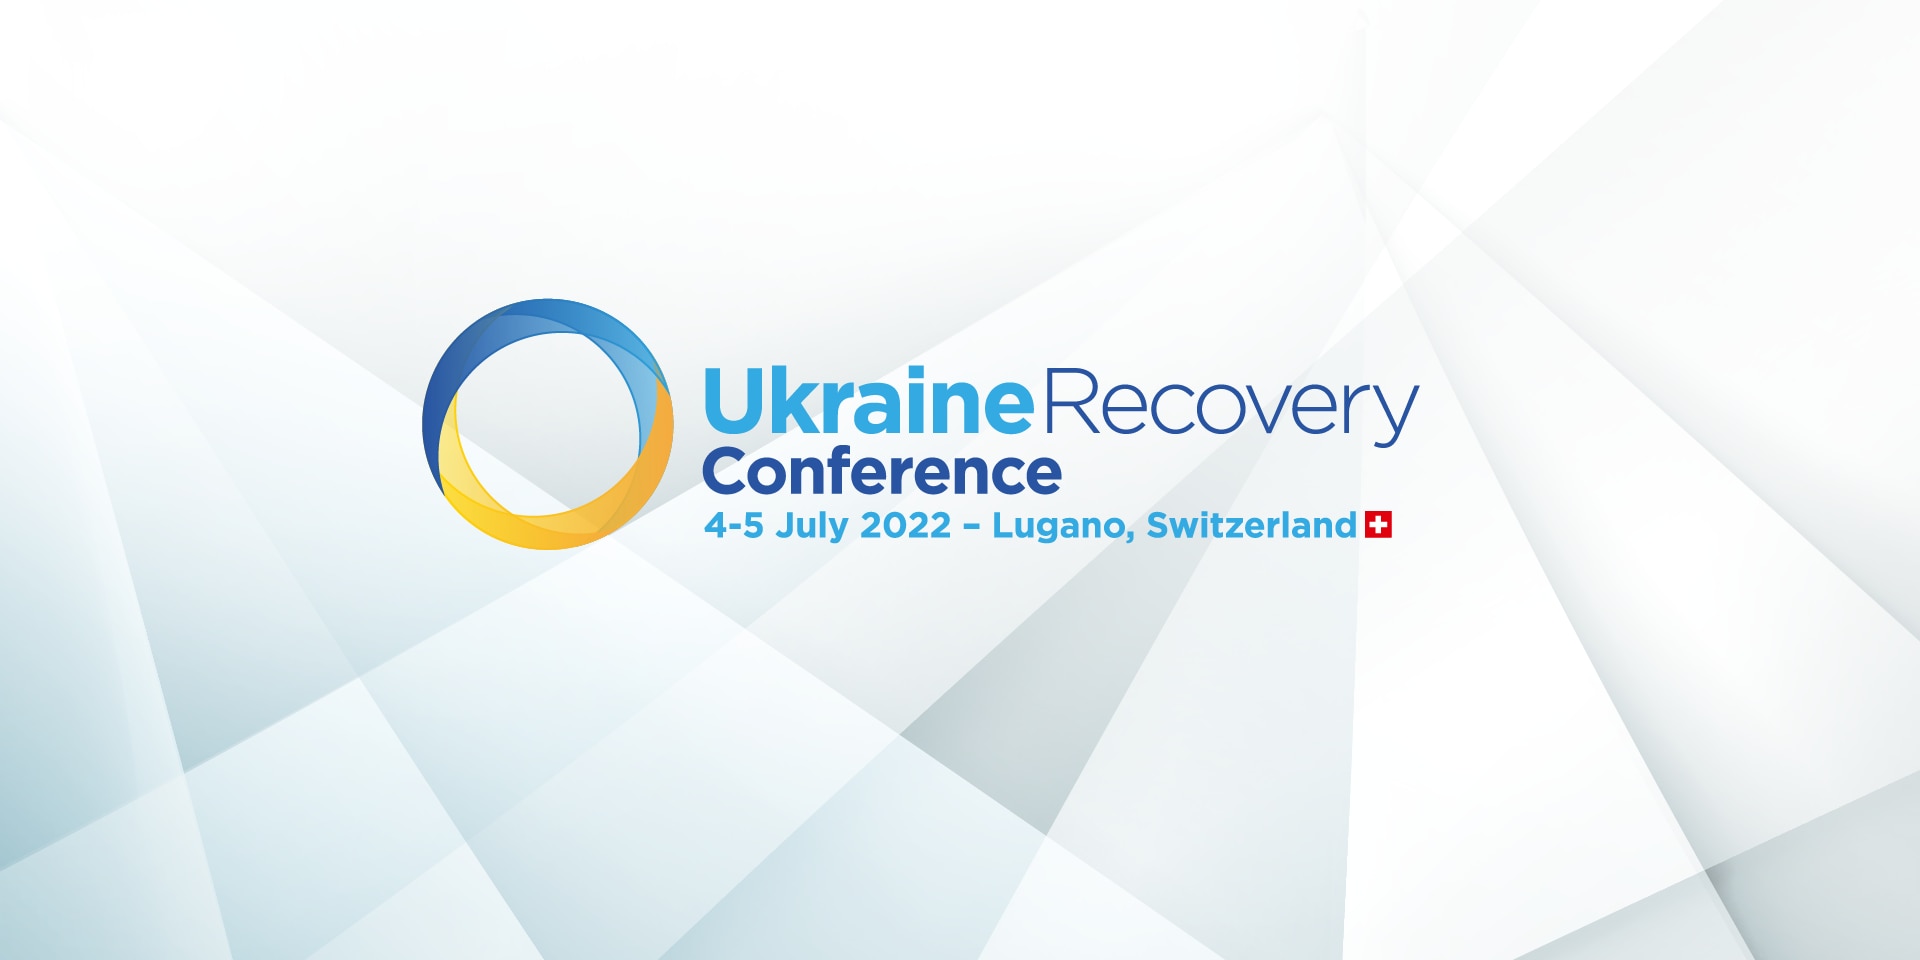 Ein grün-blau gefärbter Kreis und Angaben zur Konferenz in Lugano in blauer Schrift sind im Logo der Ukraine Recovery Conference 2022 dargestellt.